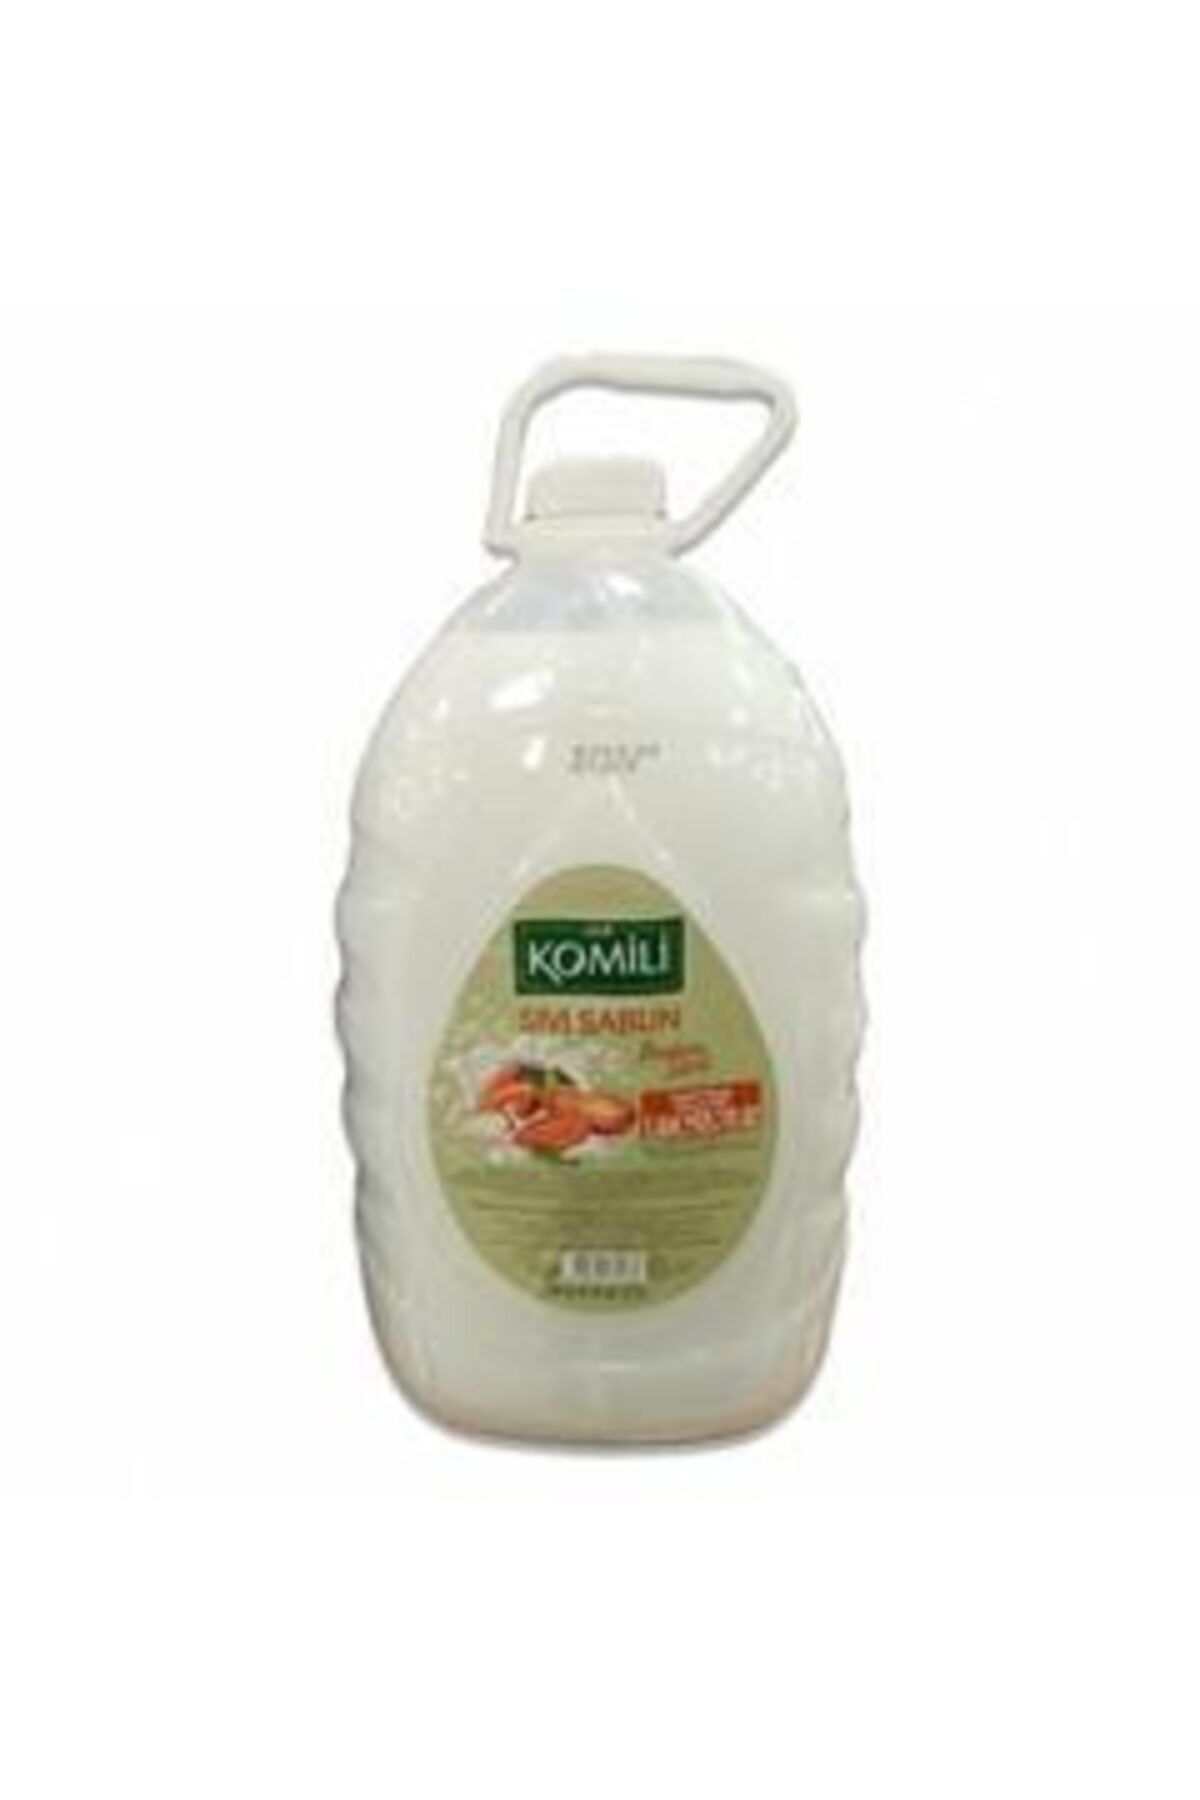 Komili Sıvı Sabun Badem Sütü 3.6 Lt